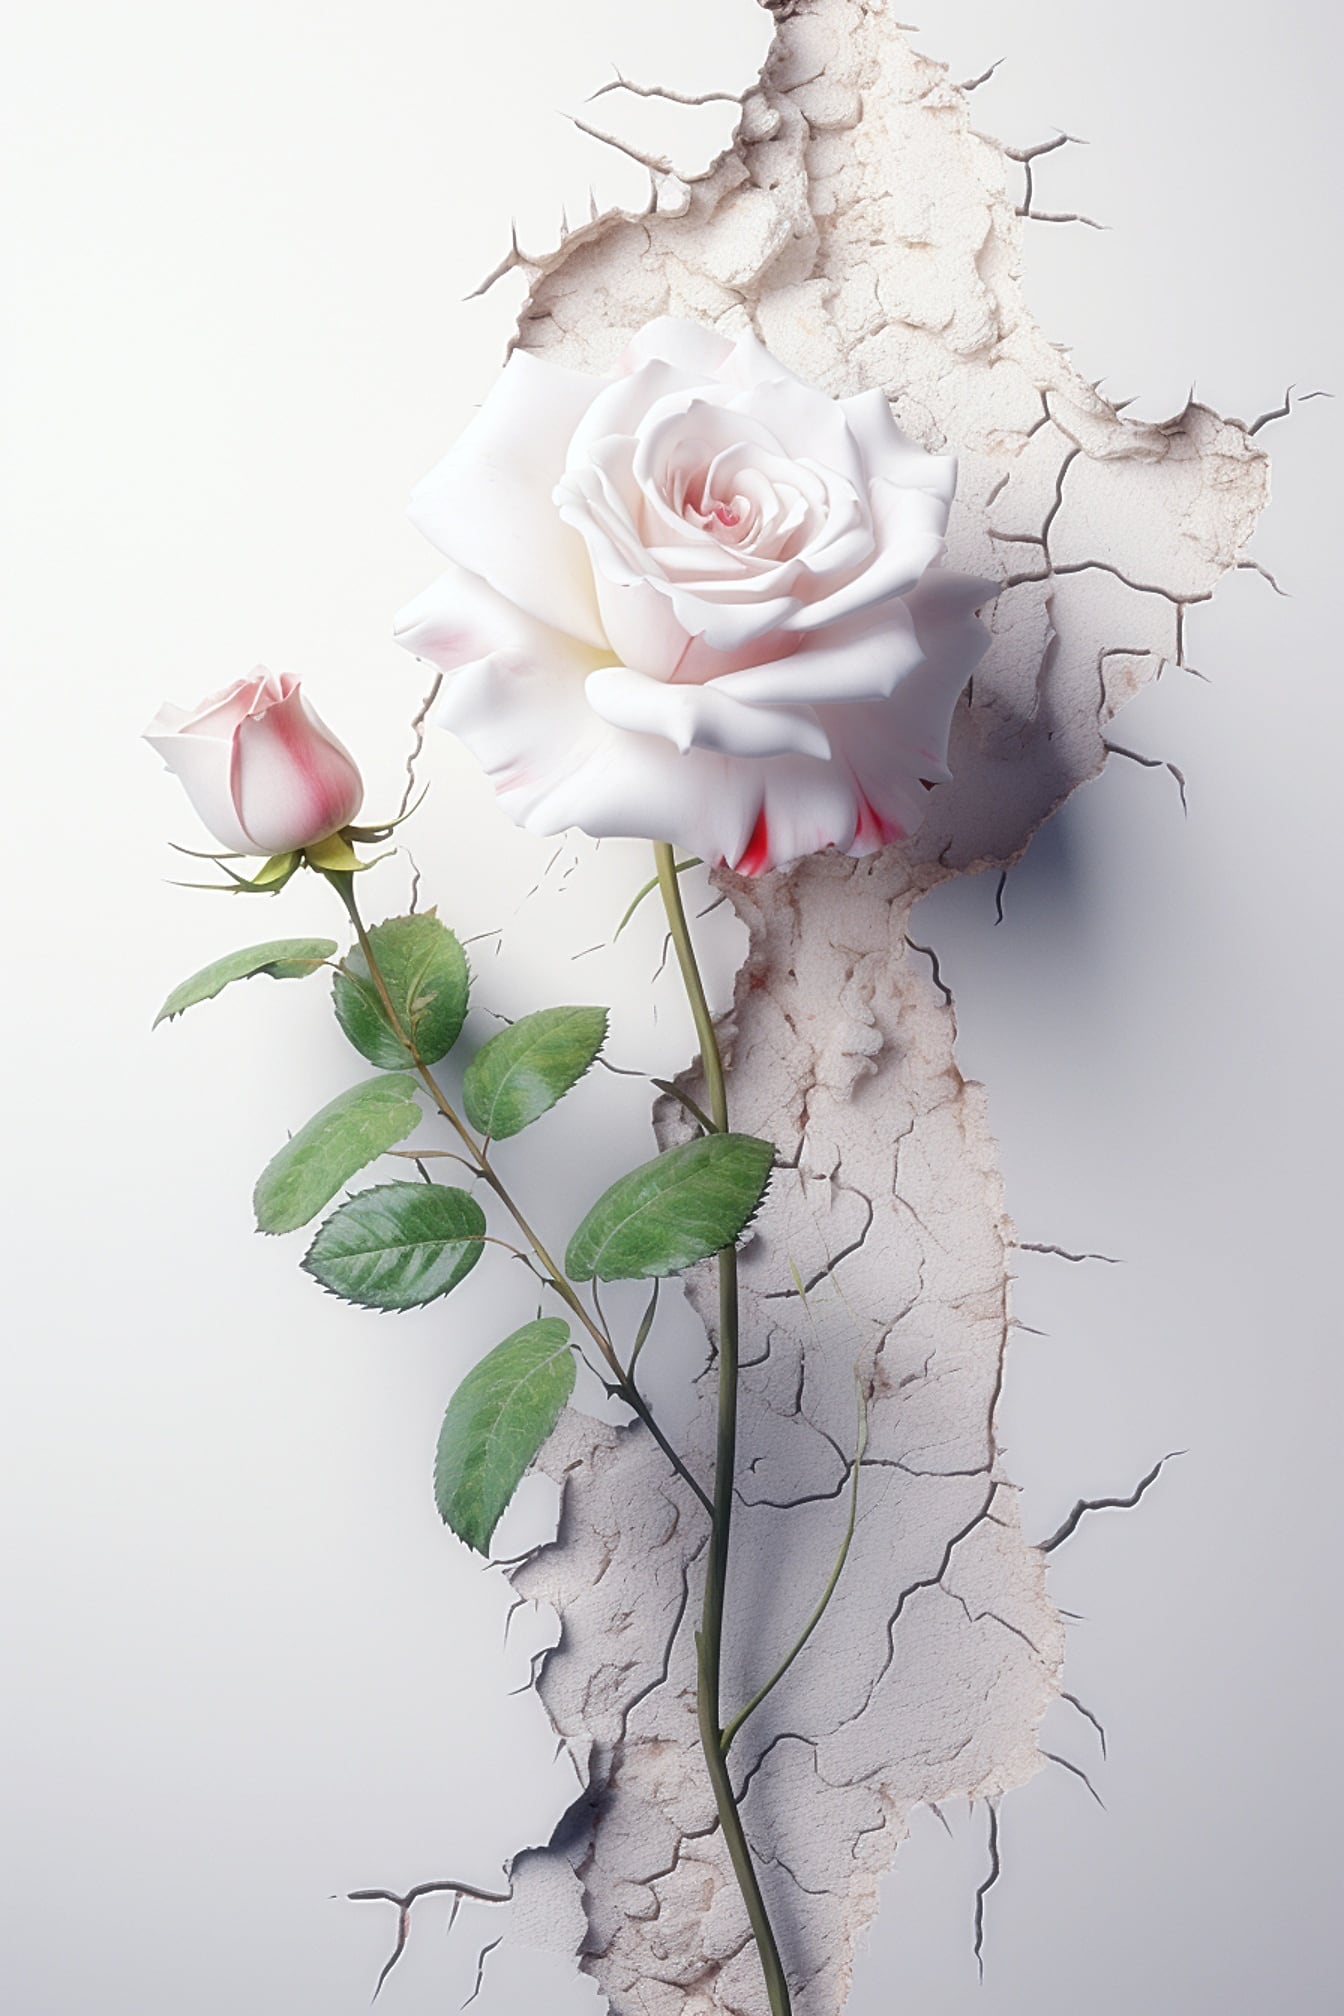 Rosa blanca con hojas verdes y una rosa rosada sobre una pared agrietada